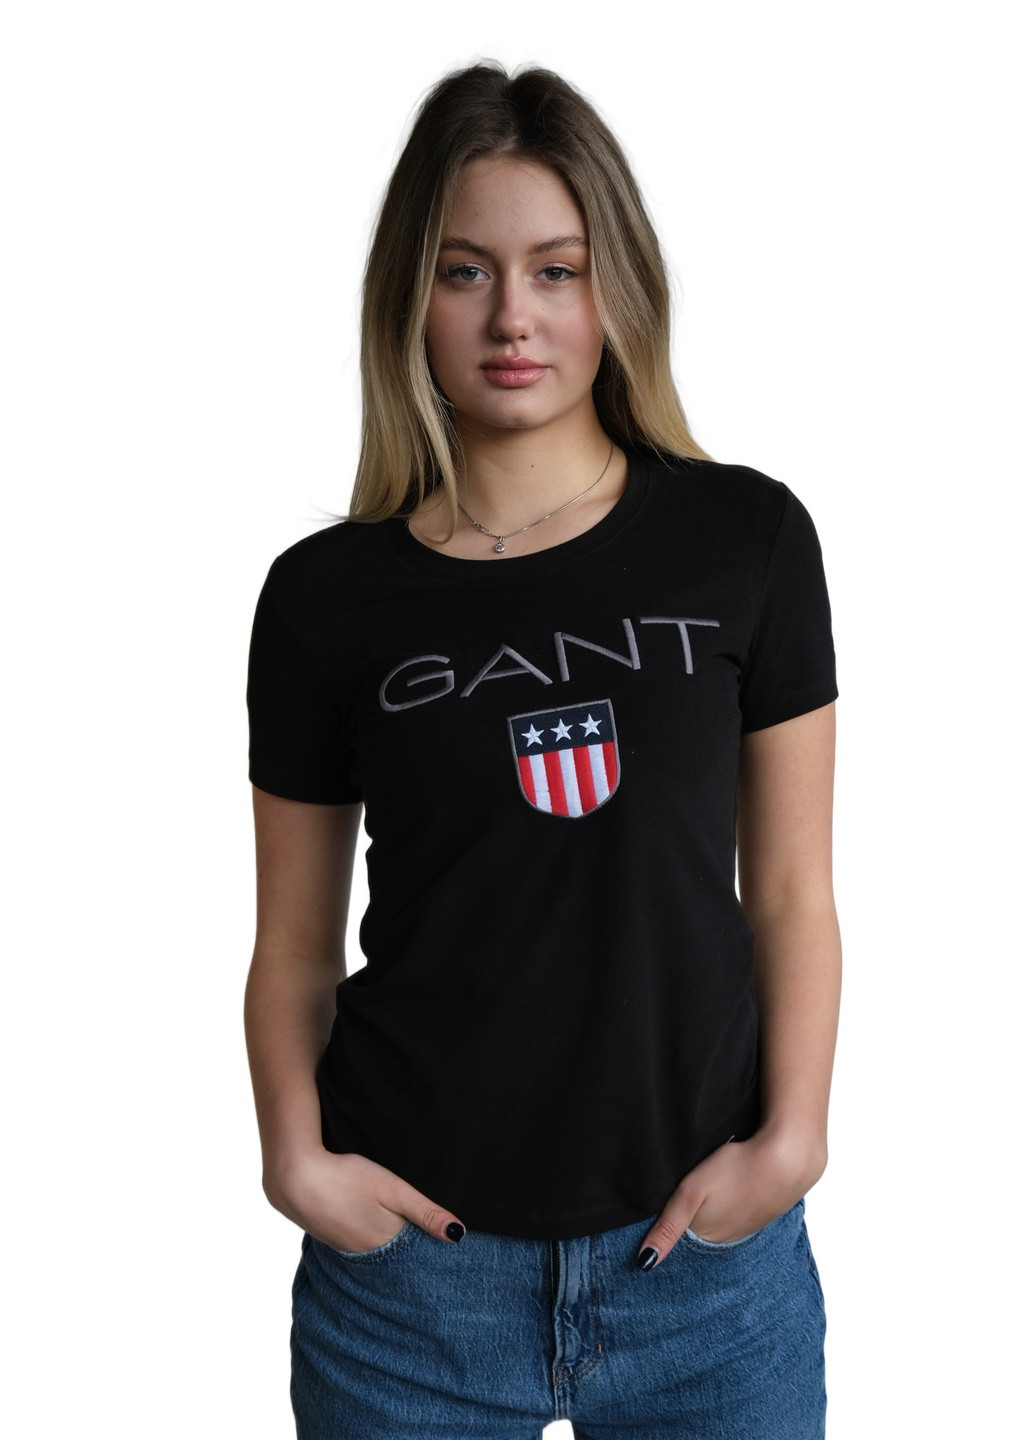 Черная летняя футболка женская Gant CLASSIC LOGO